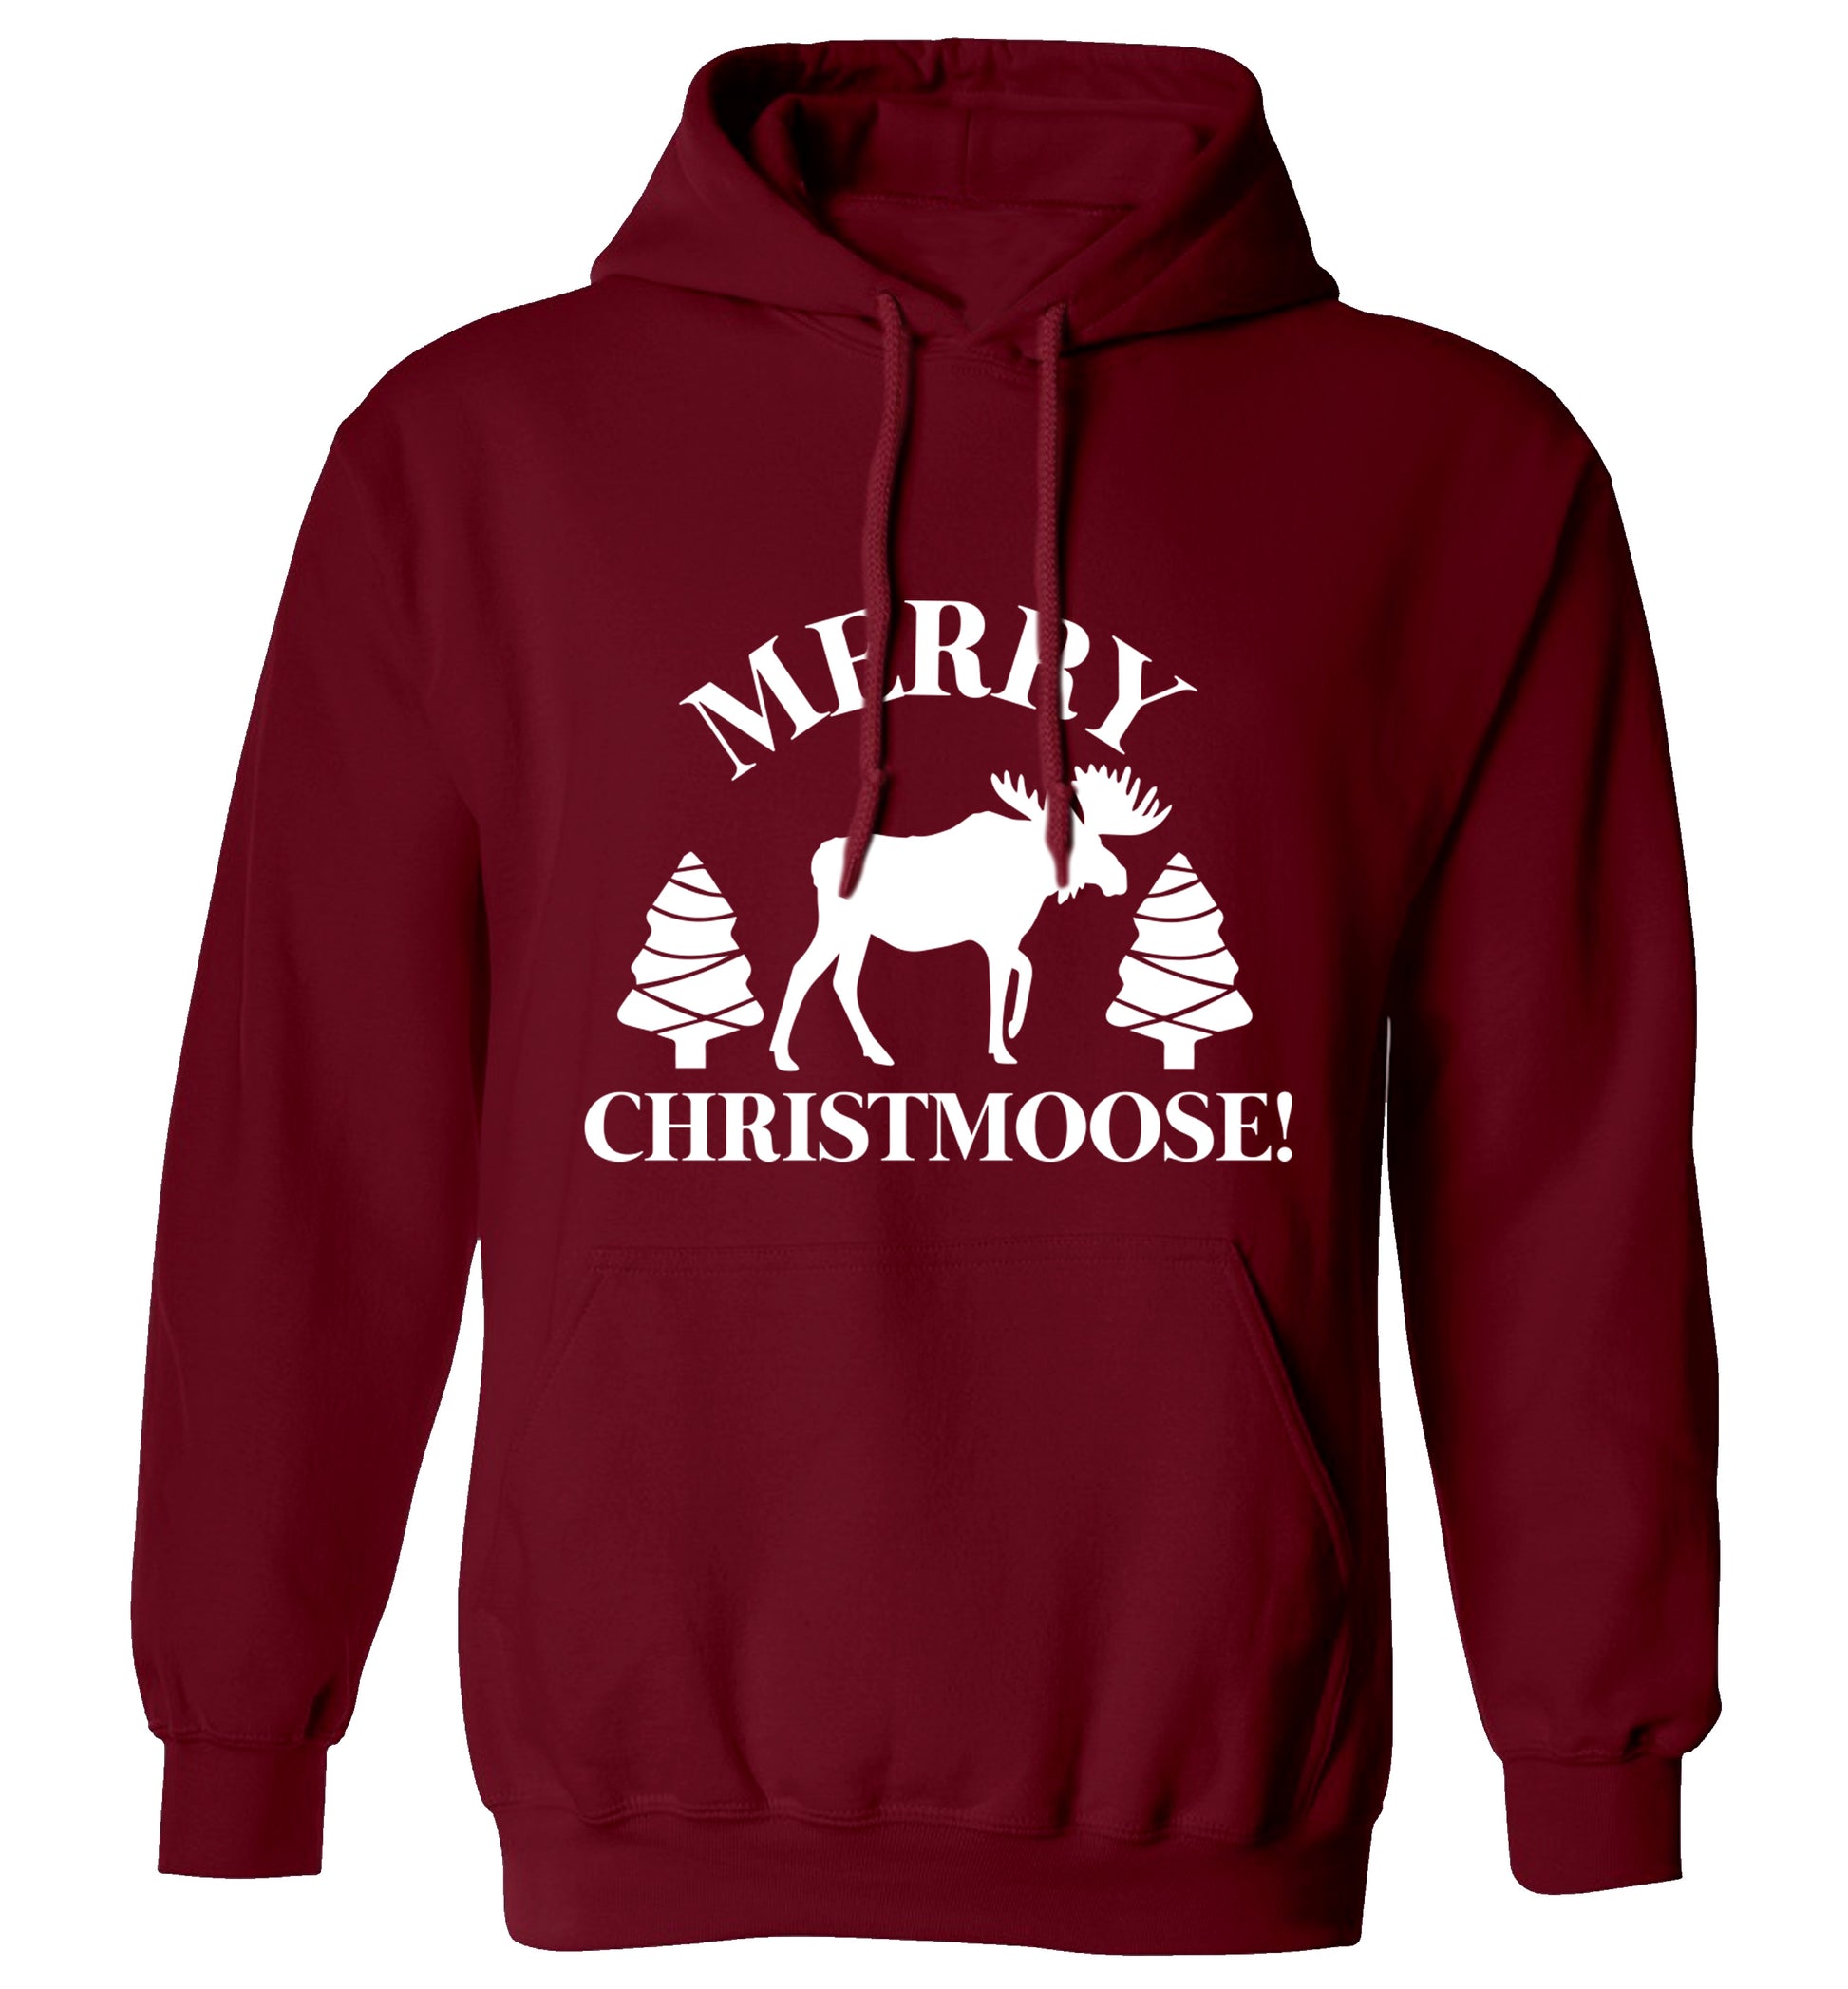 Merry Christmoose adults unisex maroon hoodie 2XL